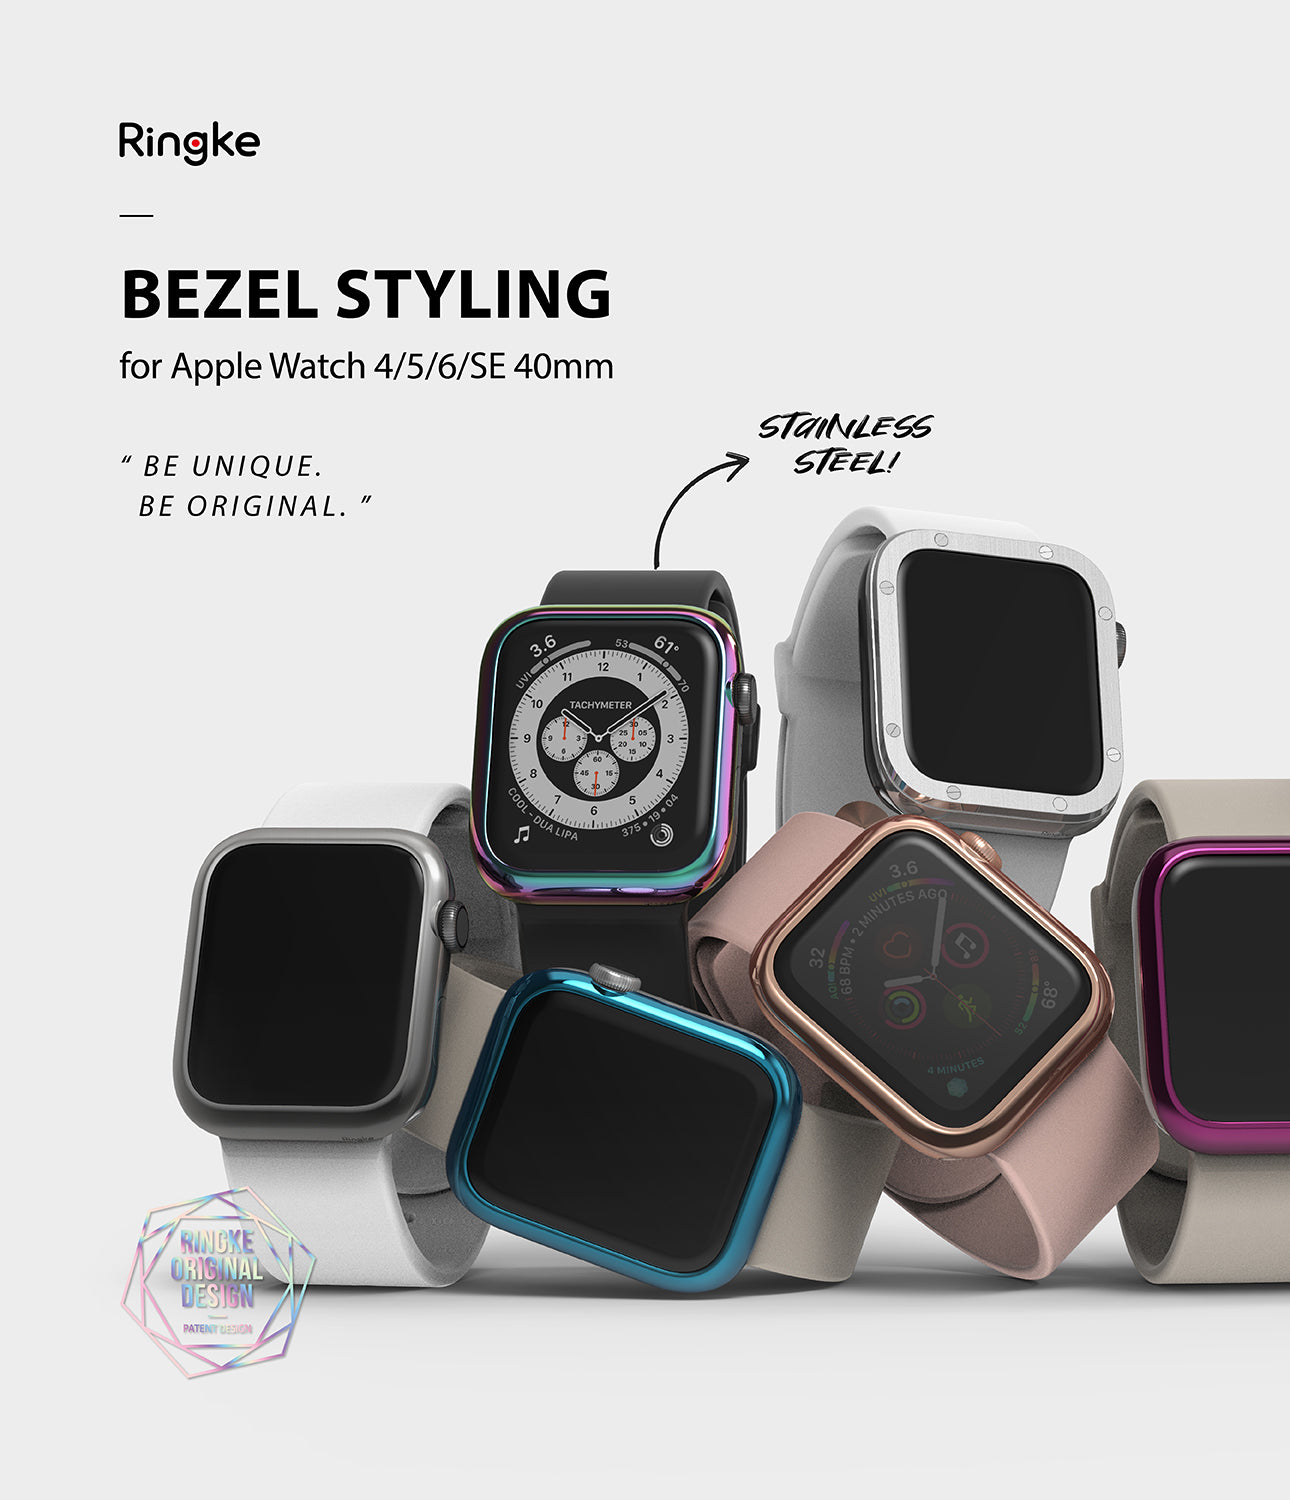 Bezel Styling for Apple Watch 4/5/6/SE 40mm